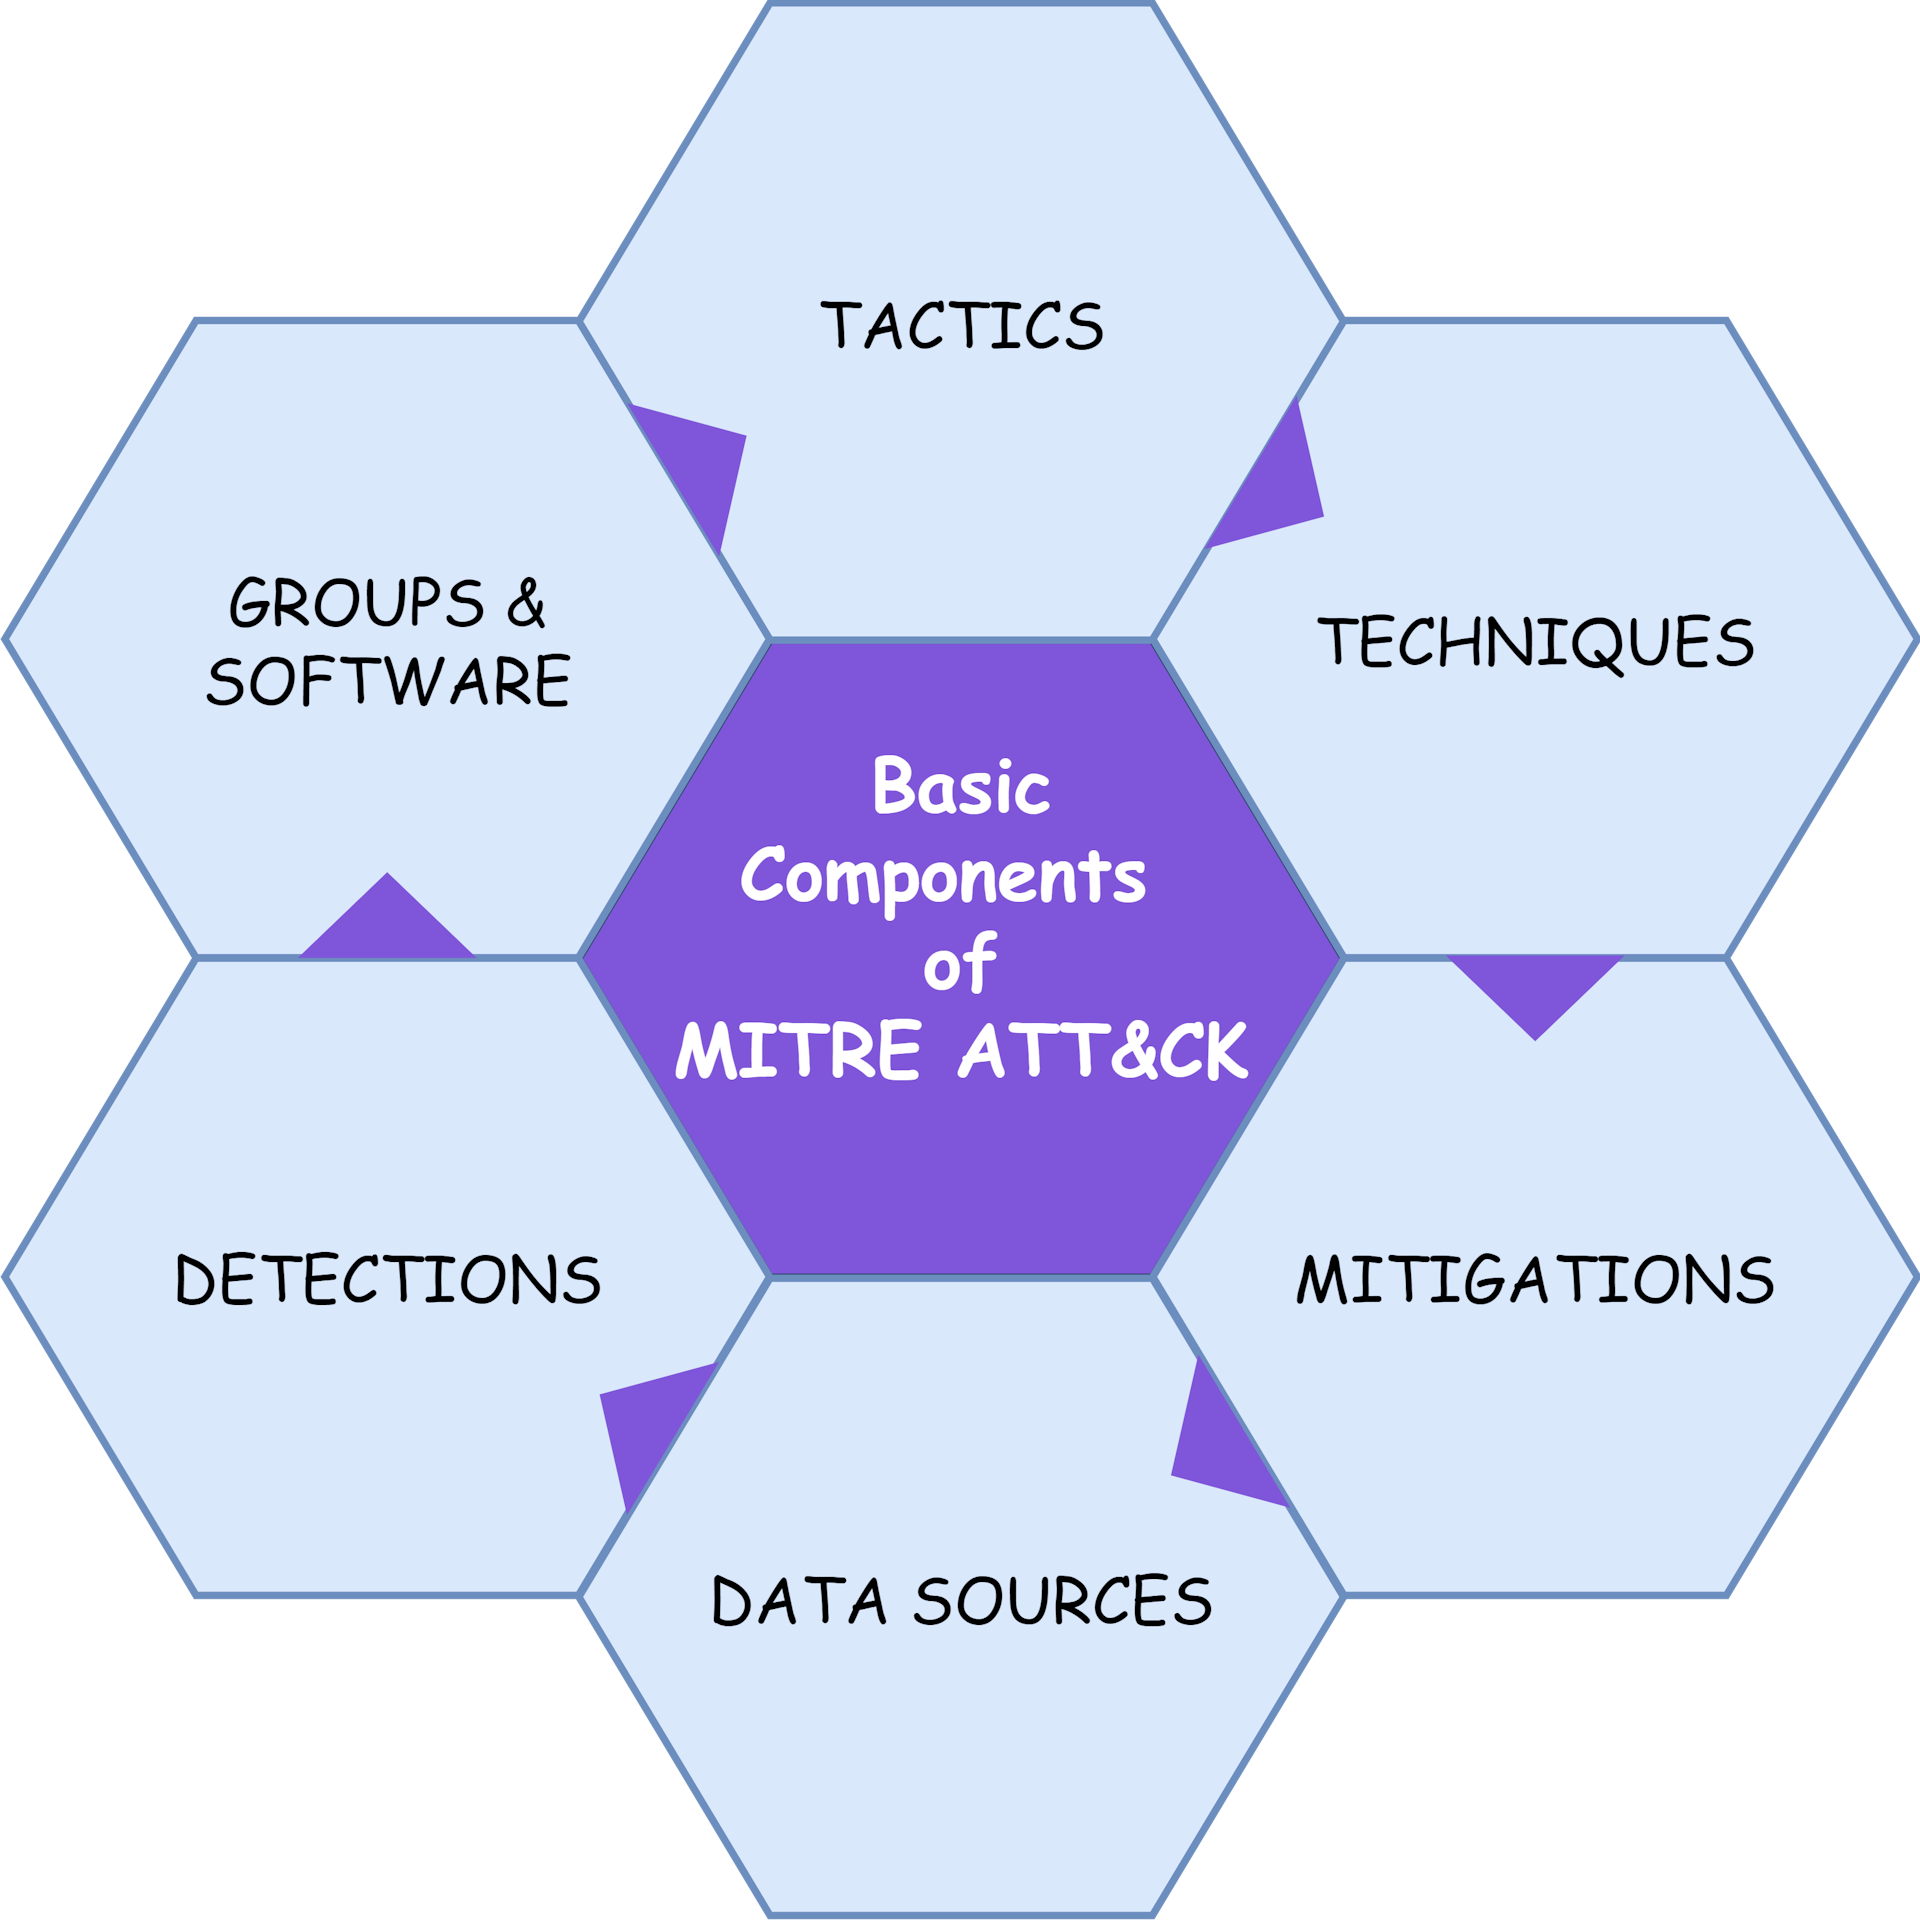 Basic Components of MITRE ATT&CK